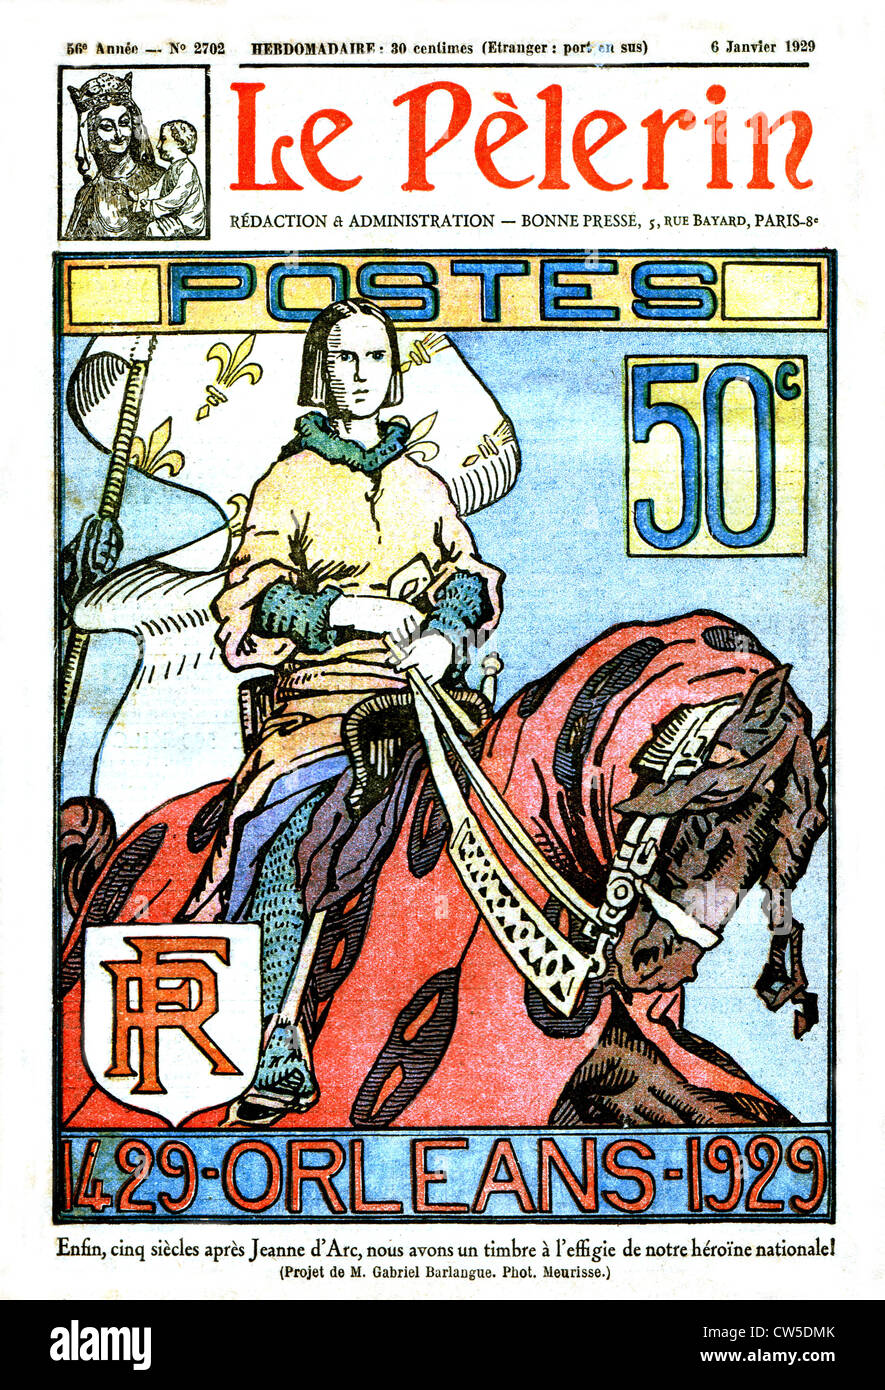 Timbre-poste à la gloire de Jeanne d'Arc -1429/1929. dans "Le Pèlerin", du 6 janvier 1929 Banque D'Images